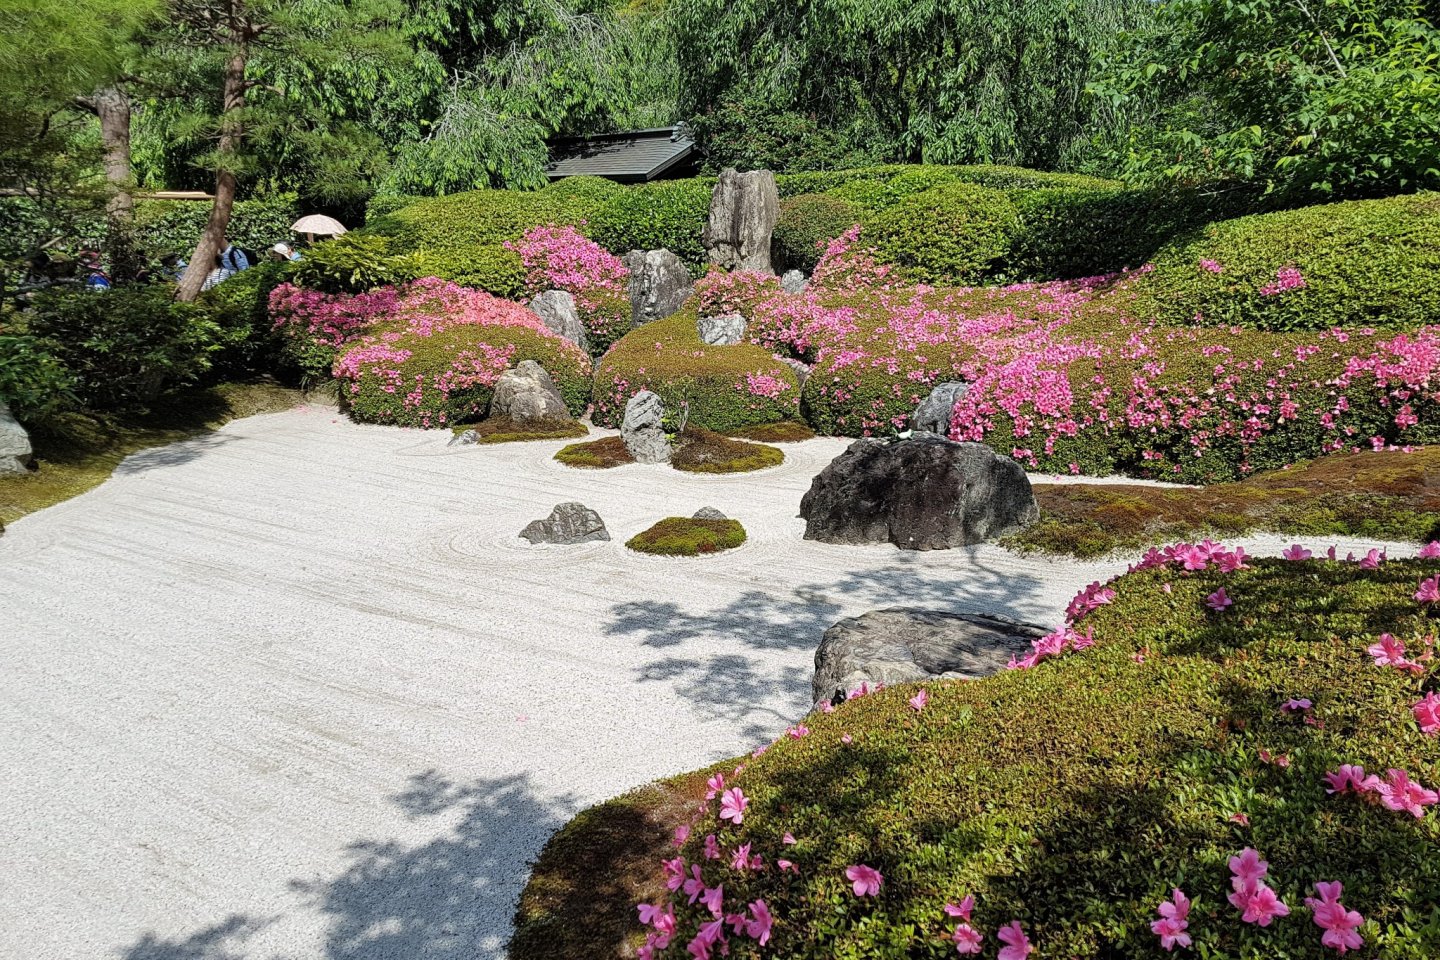 สวนญี่ปุ่นที่ตั้งอยู่ด้านหน้าของฮอนโด (hondou) หรืออาคารหลัก